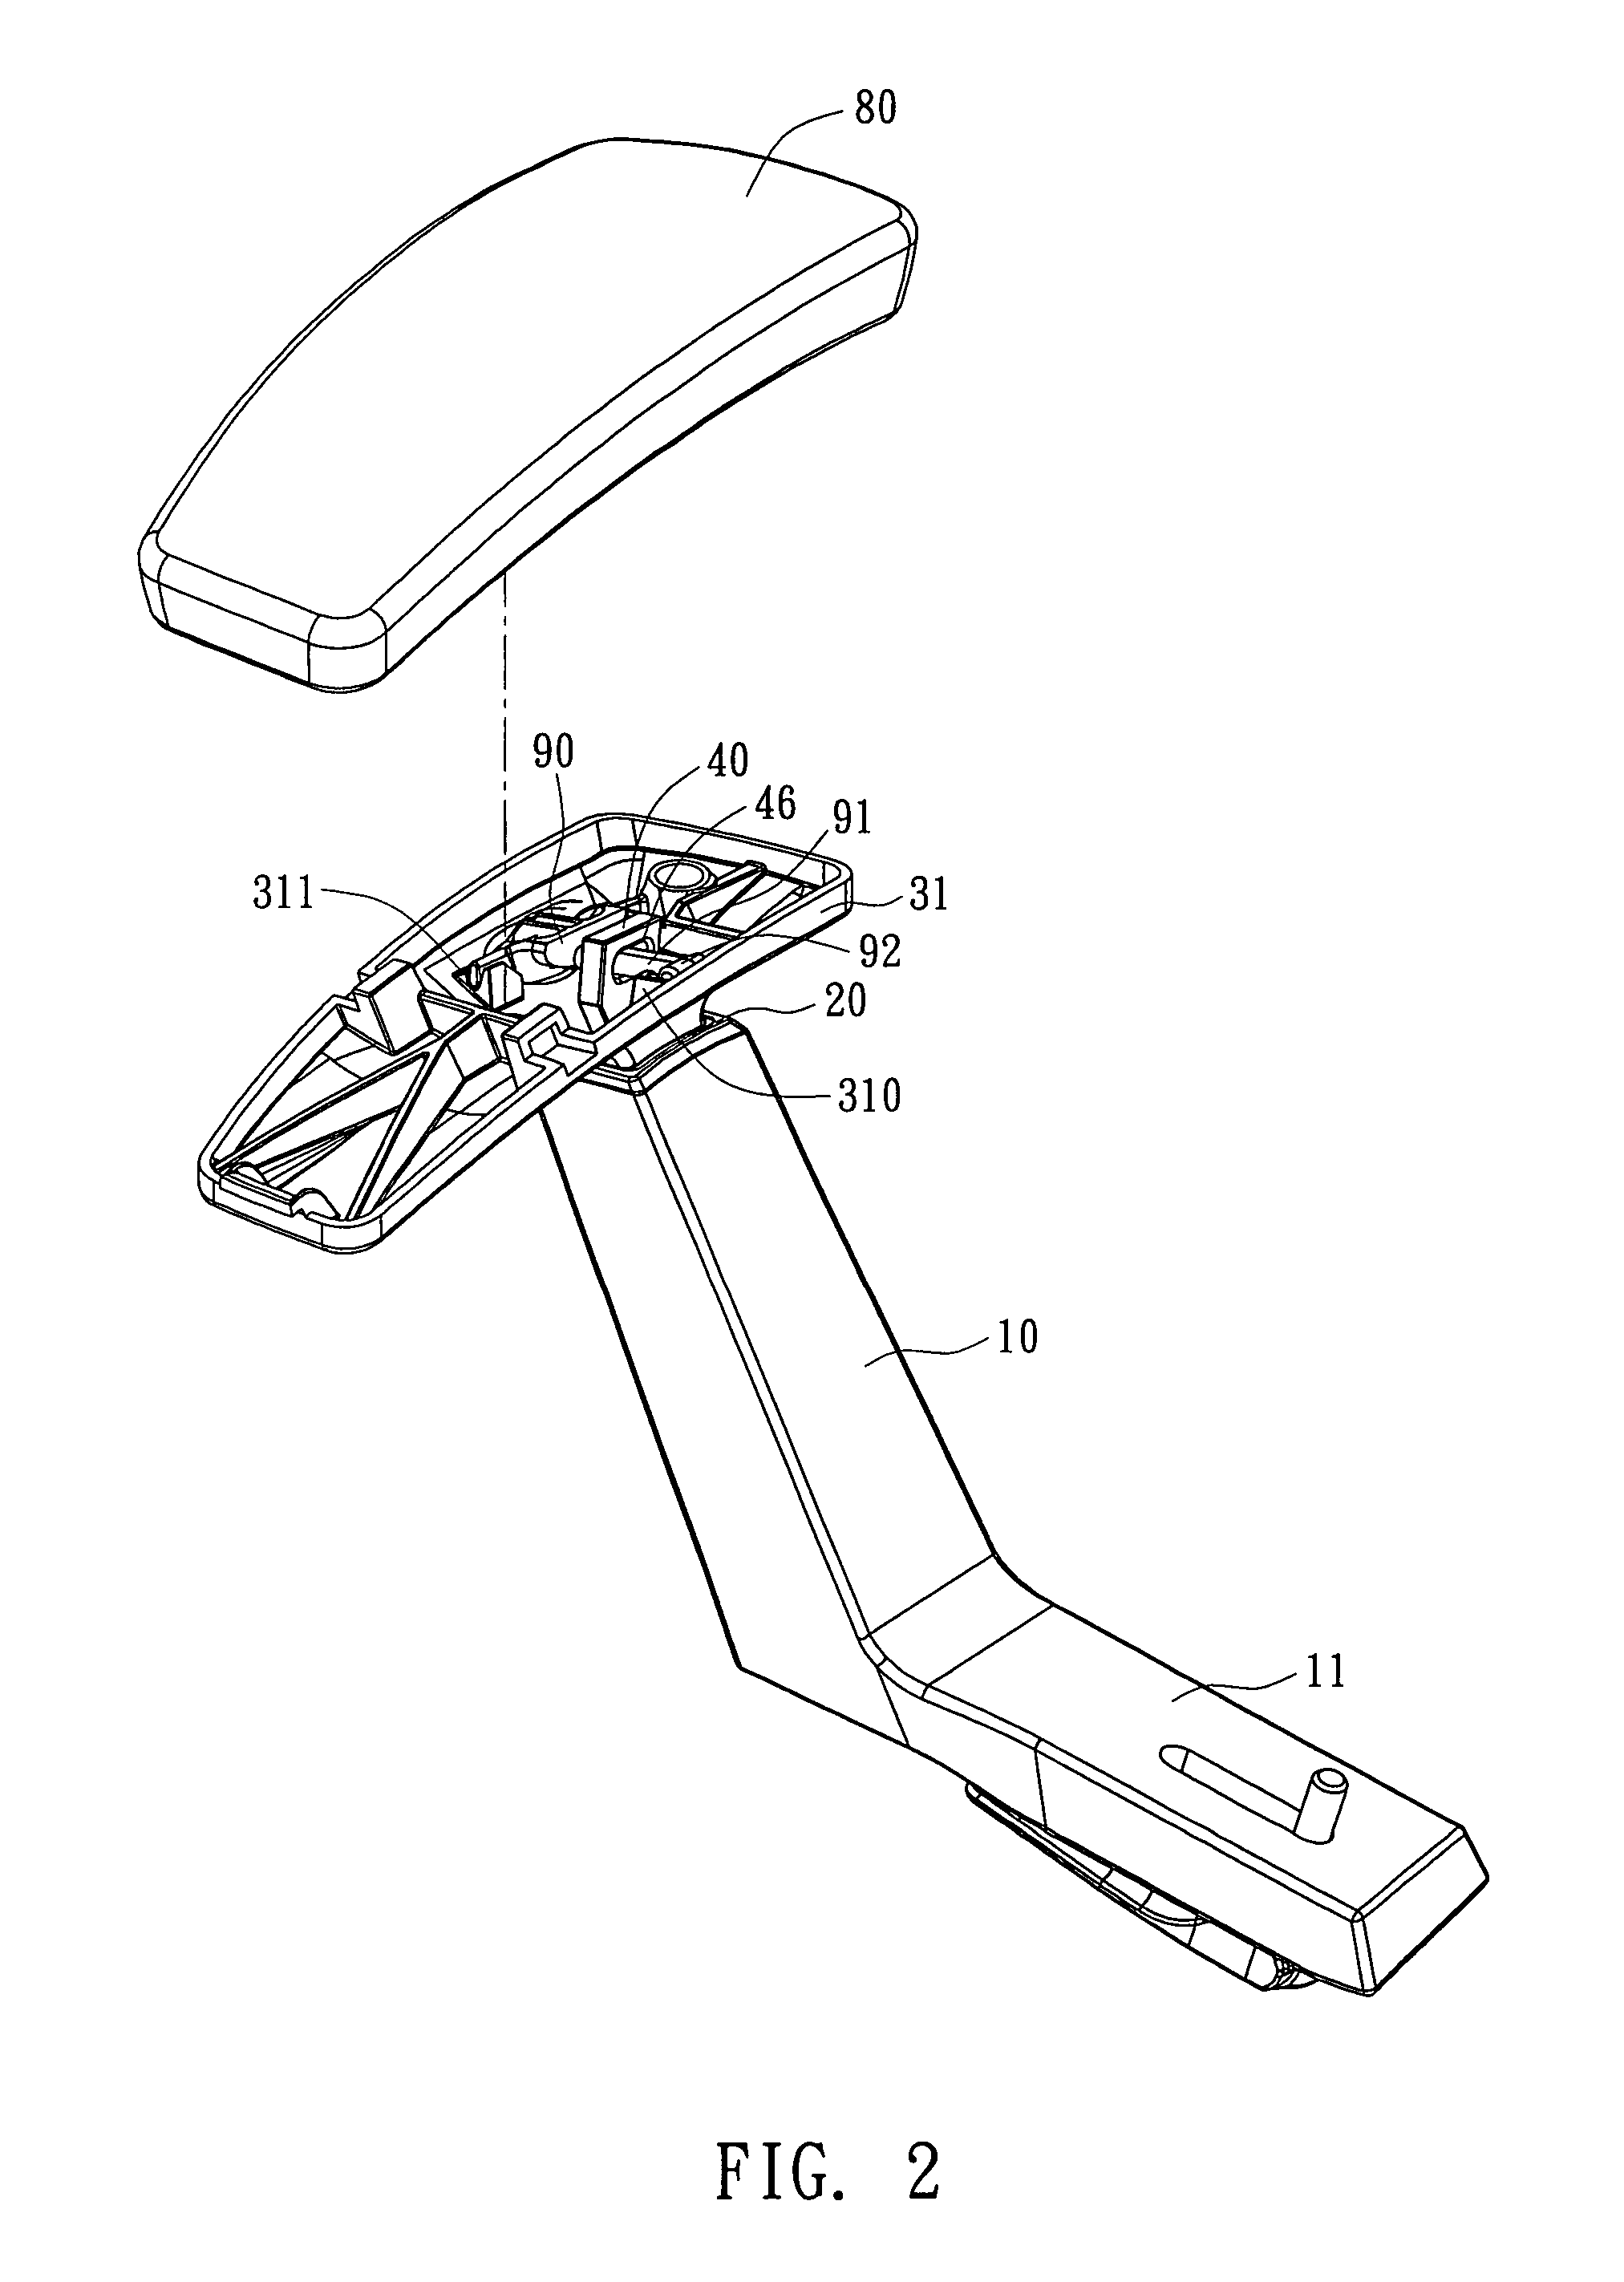 Height adjustment mechanism for armrest